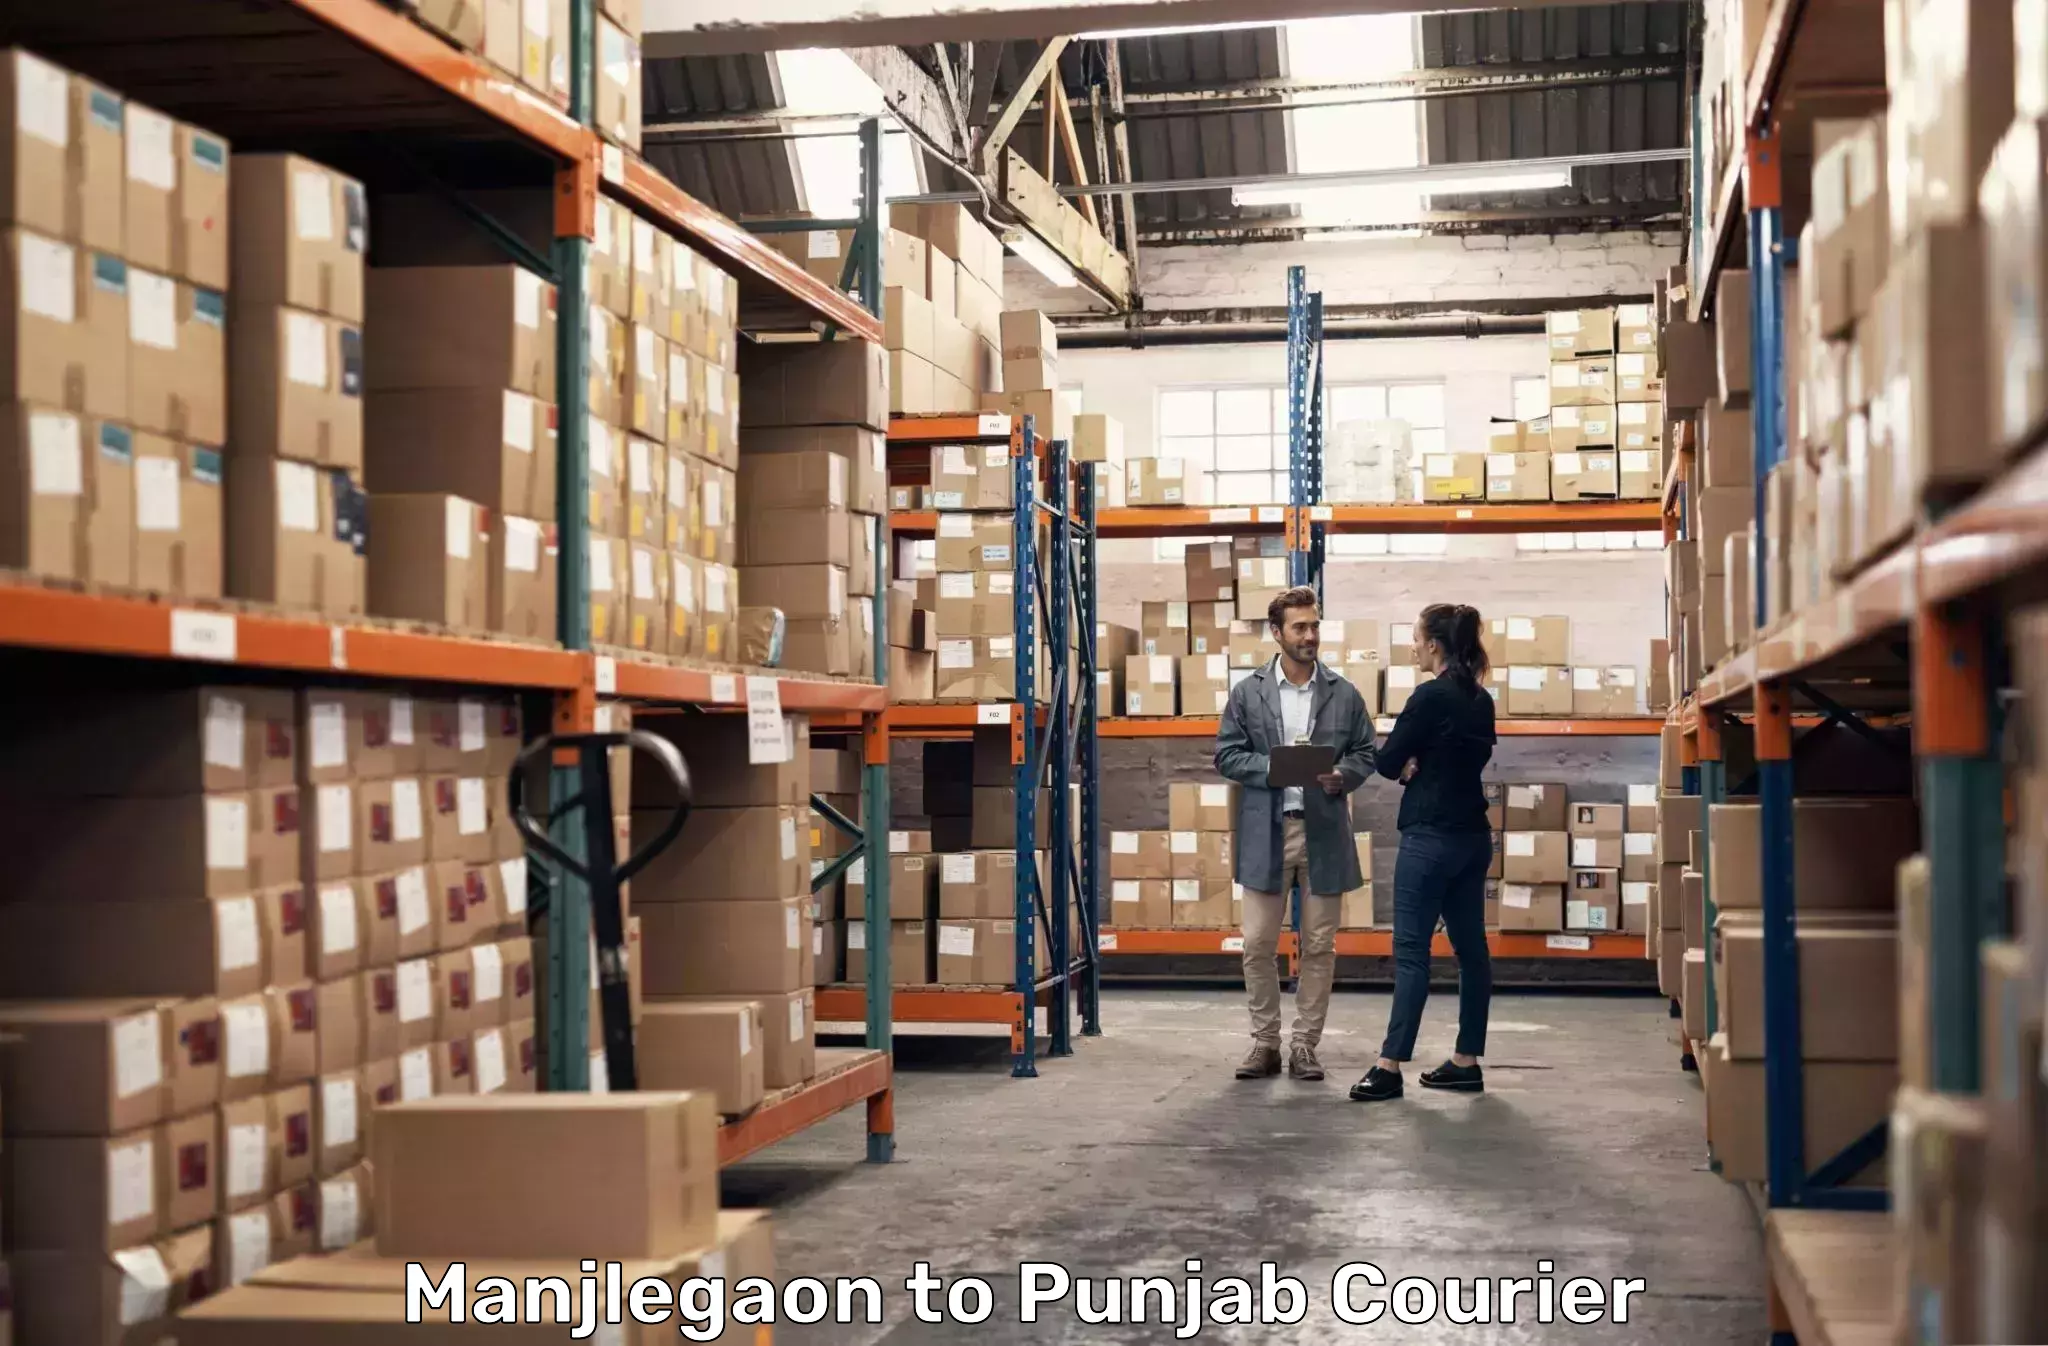 Comprehensive shipping network Manjlegaon to Punjab